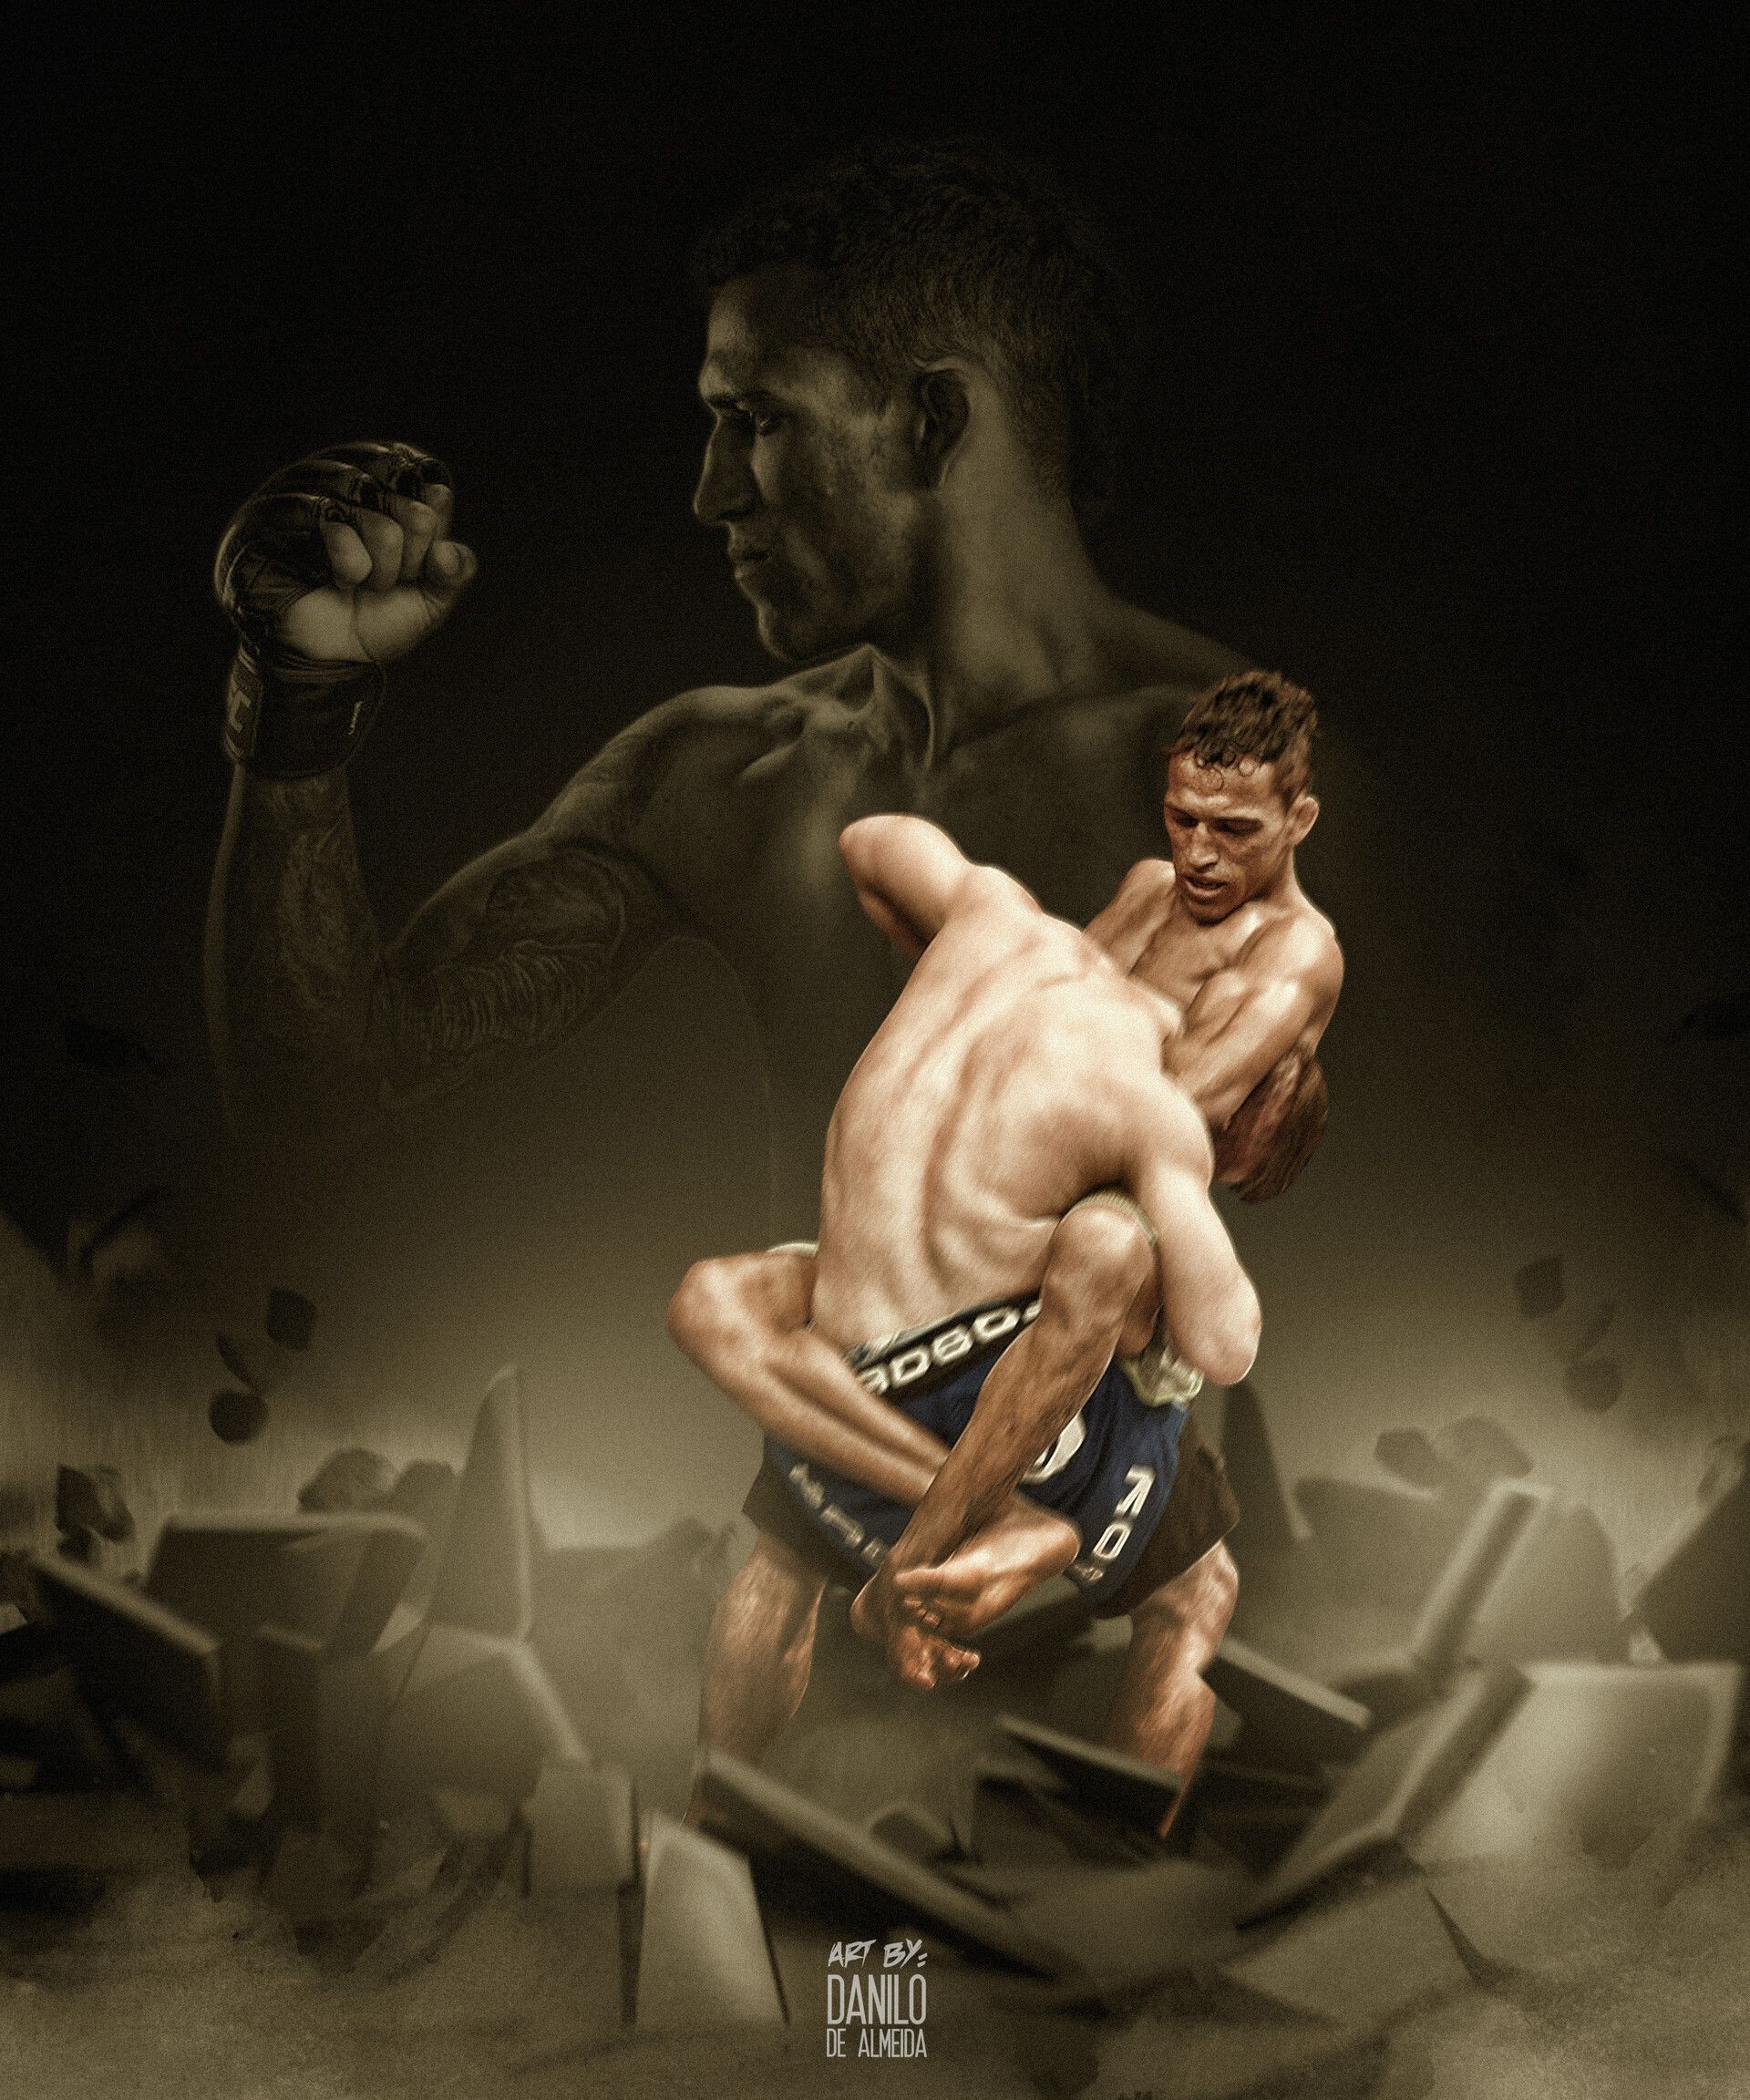 [UFC Fighters] Charles Do Bronx, Danilo de Almeida